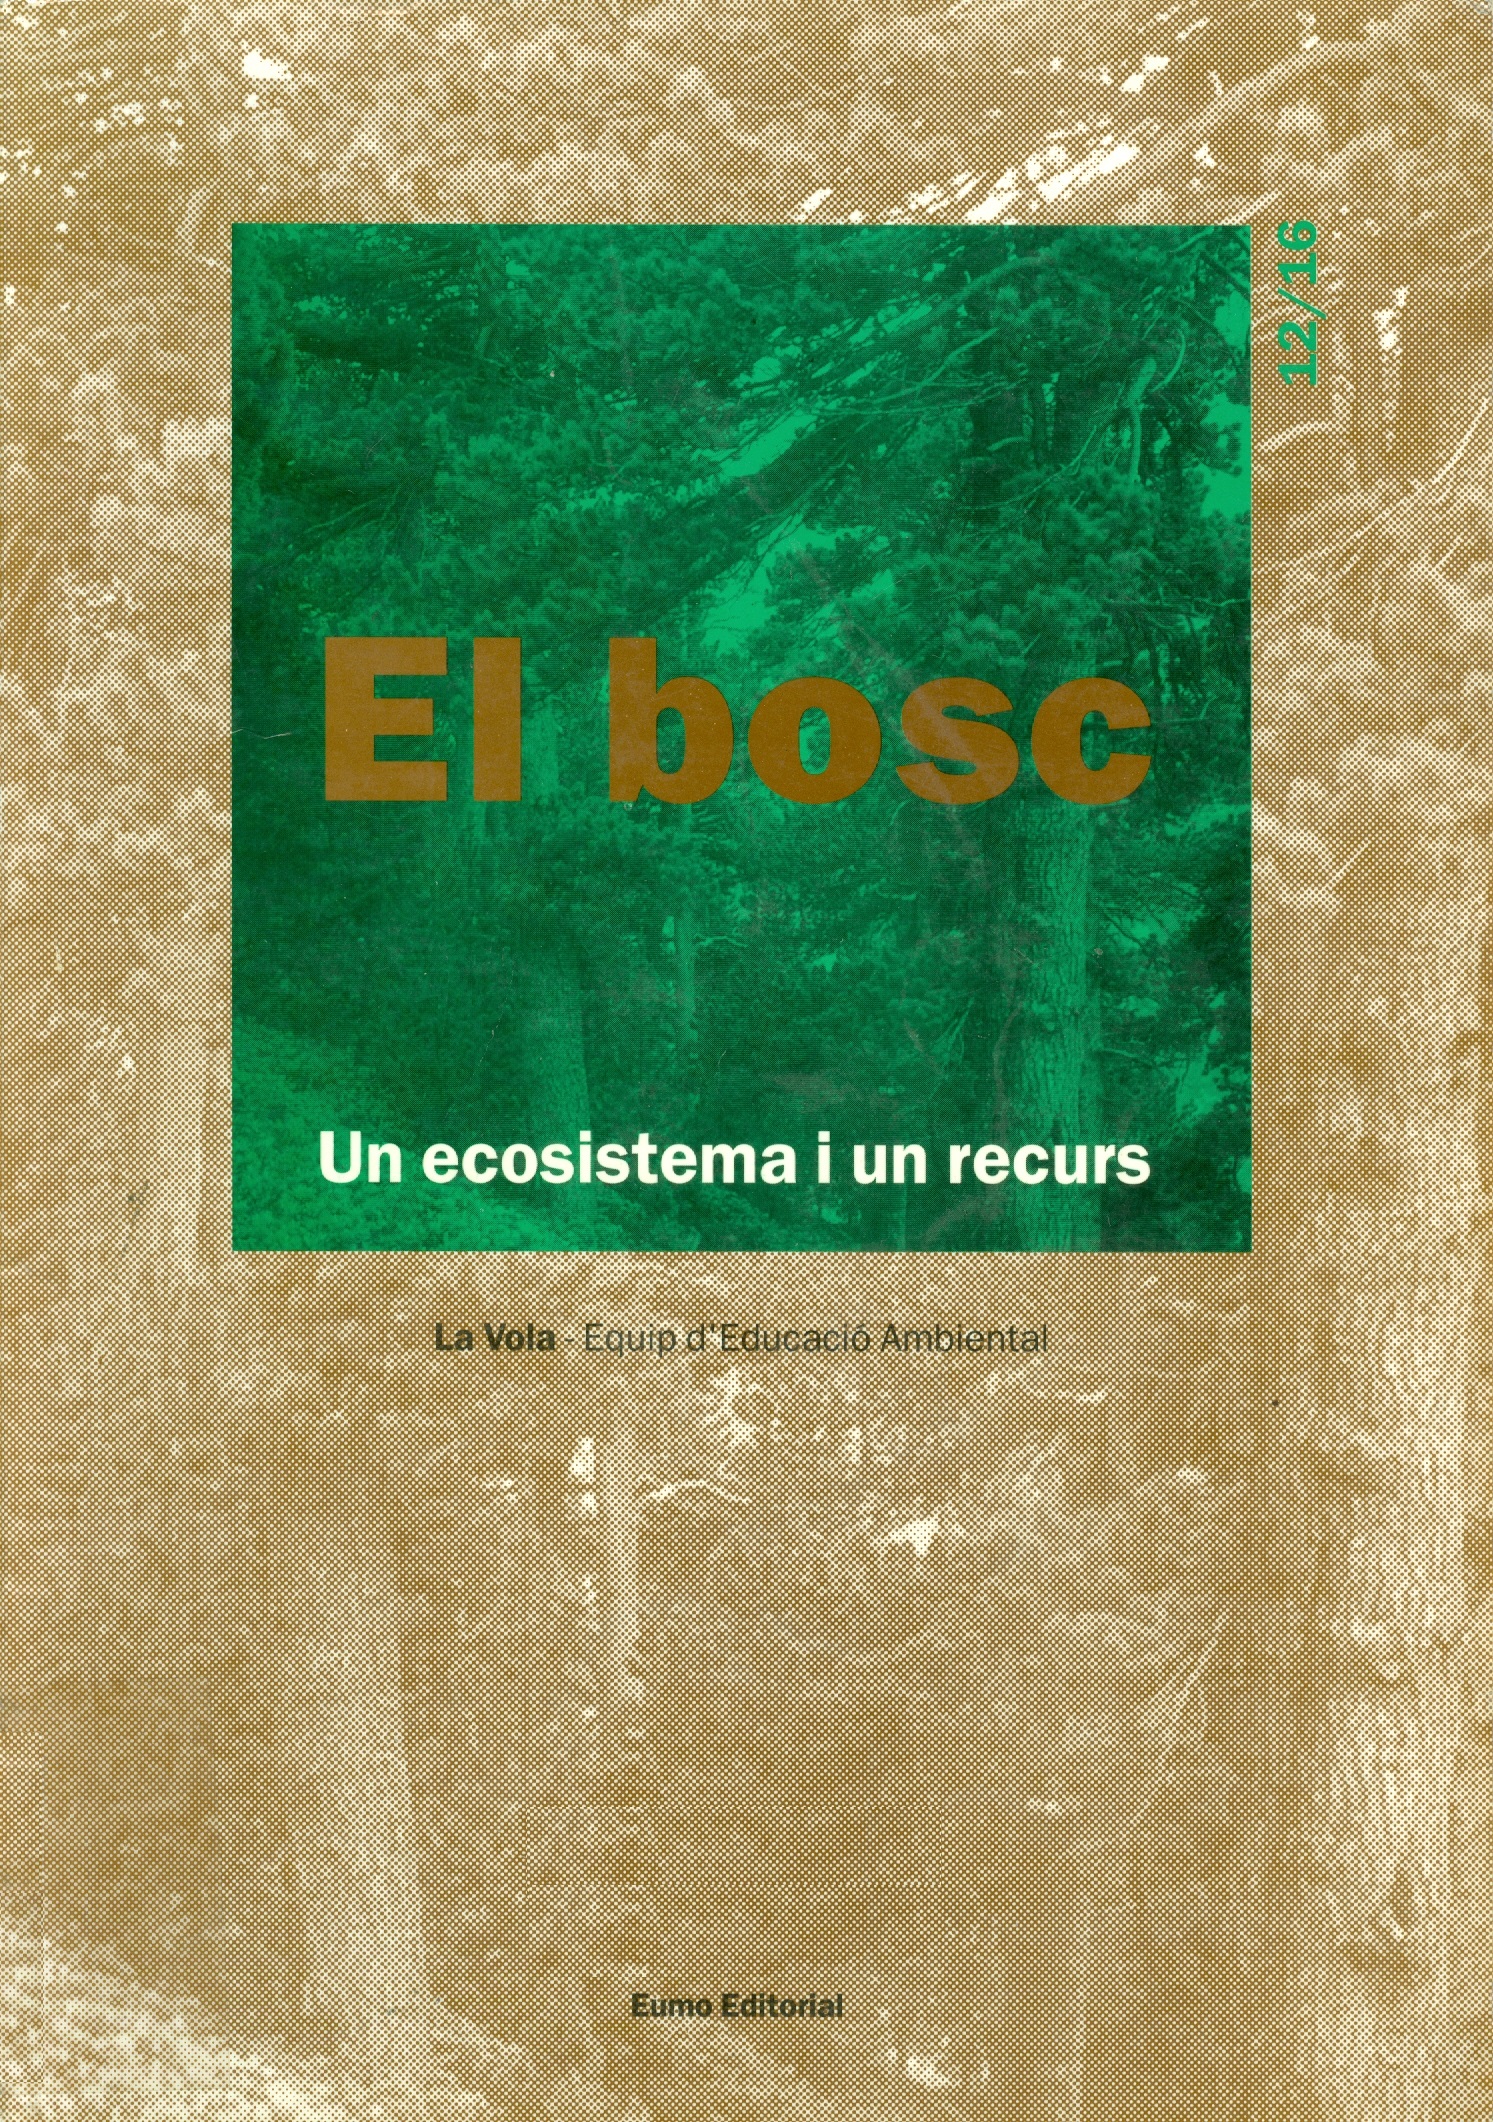 El Bosc : un ecosistema i un recurs / La Vola. Equip d'Educació Ambiental